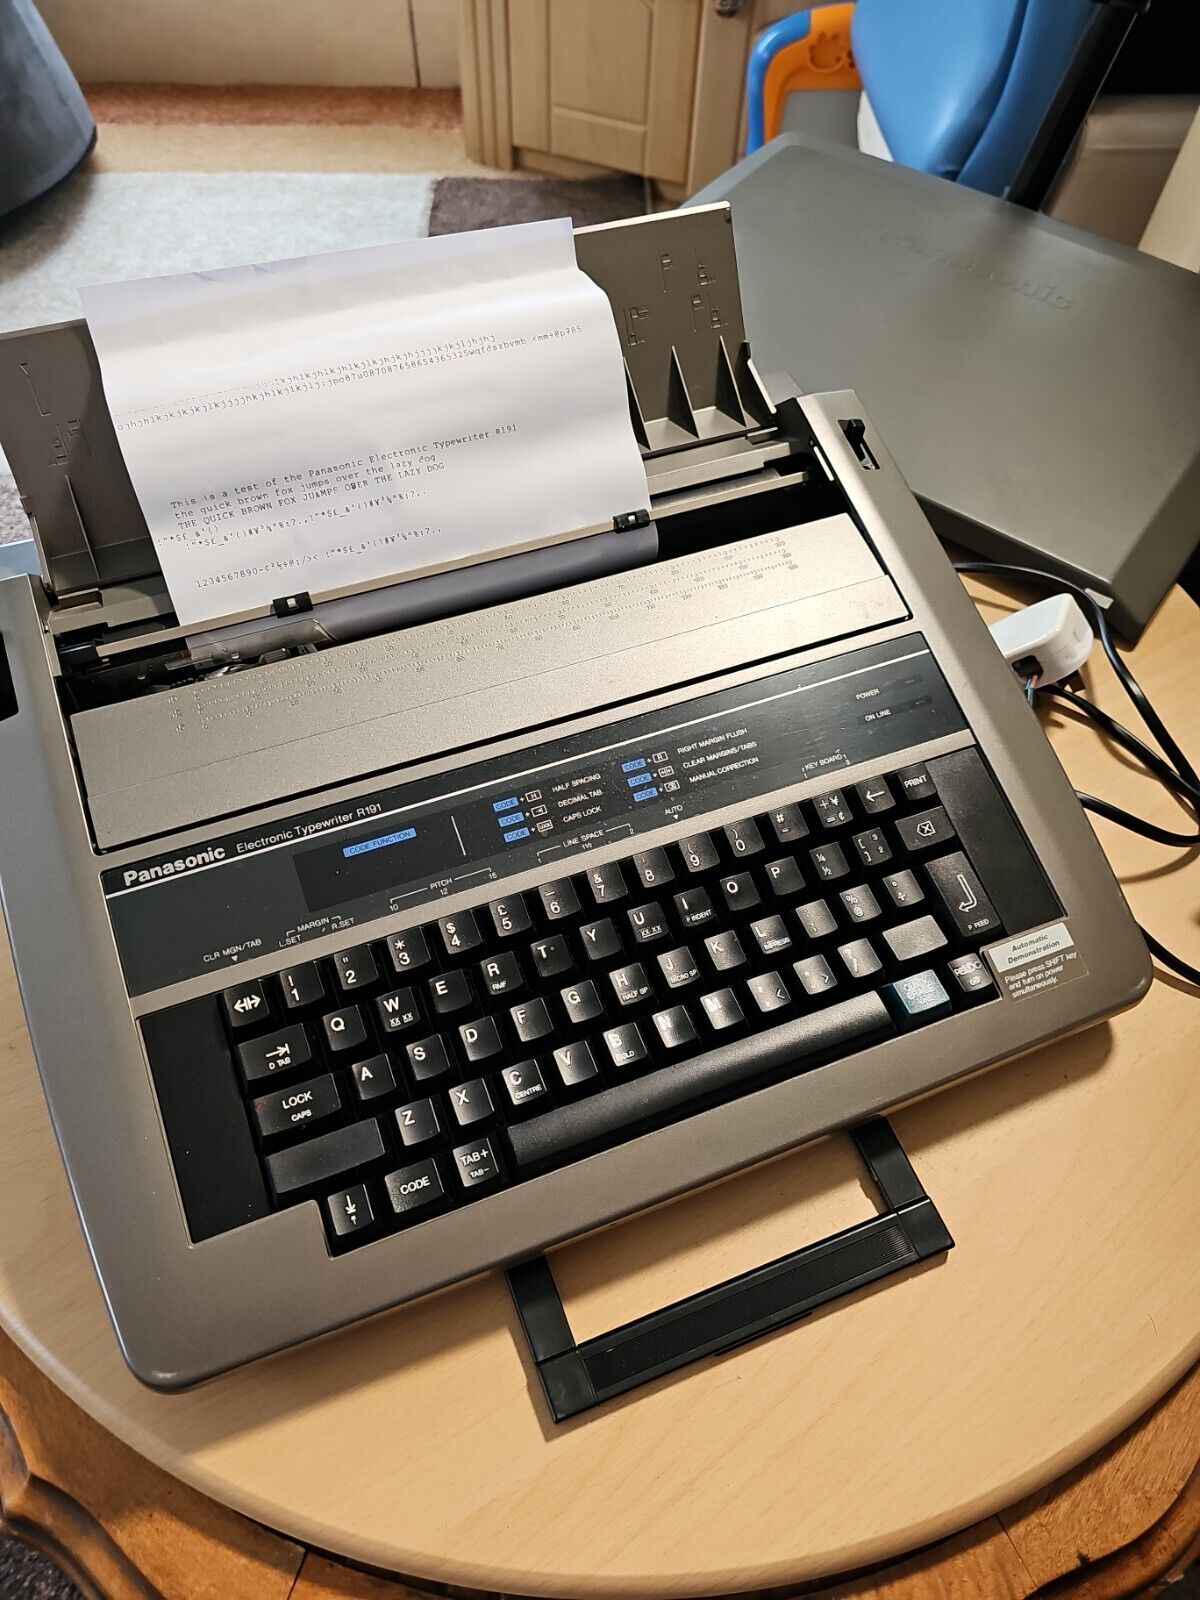 Panasonic Electronic Typewriter R191 Working but missing two knobs